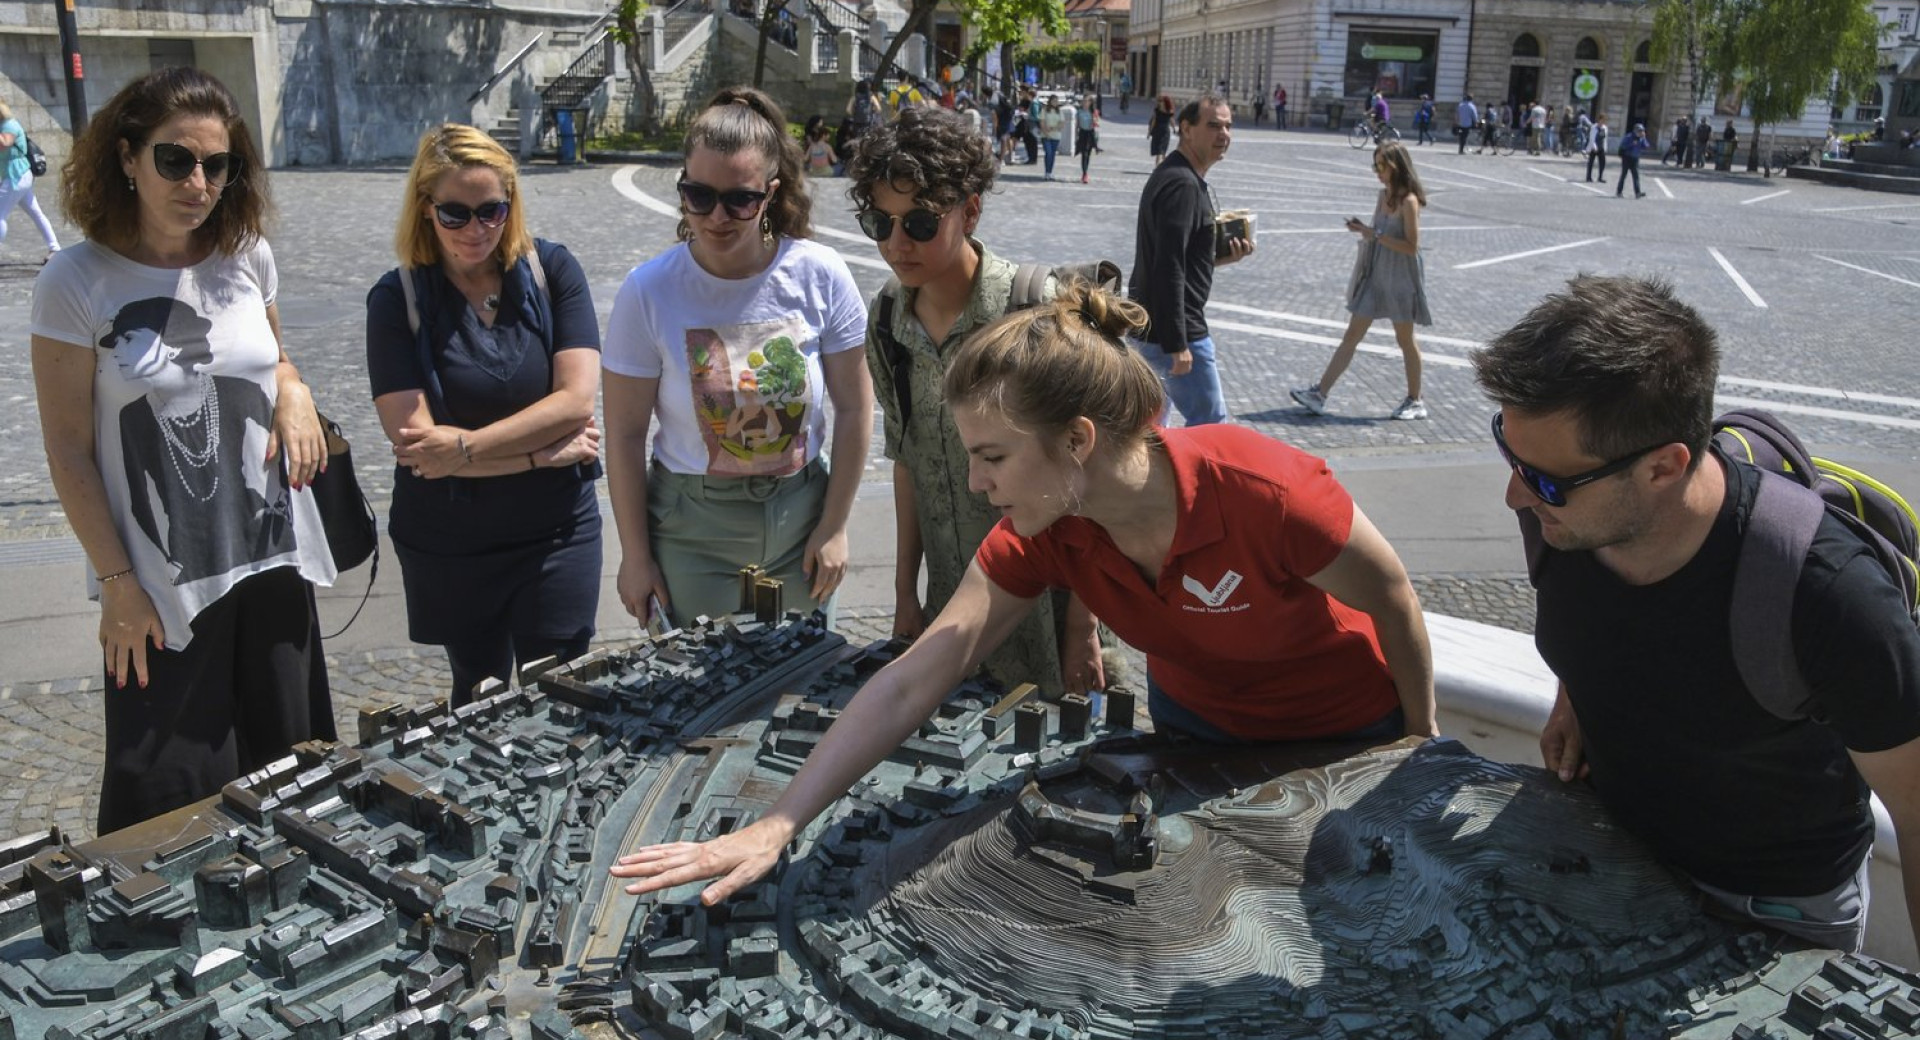 Turistična vodnica s skupino obiskovalcev pred maketo Ljubljane na Prešernovem trgu